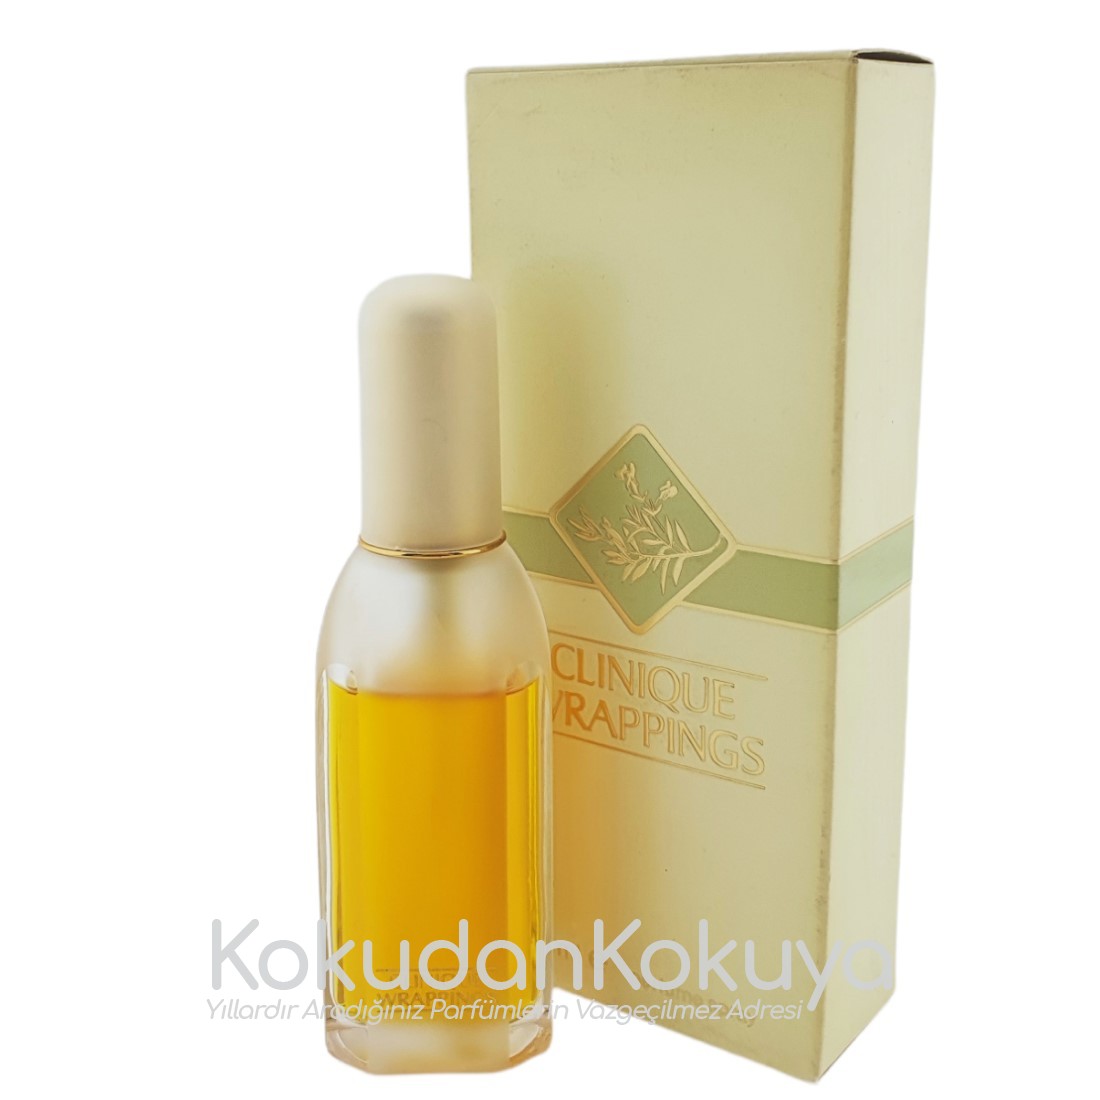 CLINIQUE Wrappings (Vintage) Parfüm Kadın 25ml Eau De Parfum (EDP) Sprey 